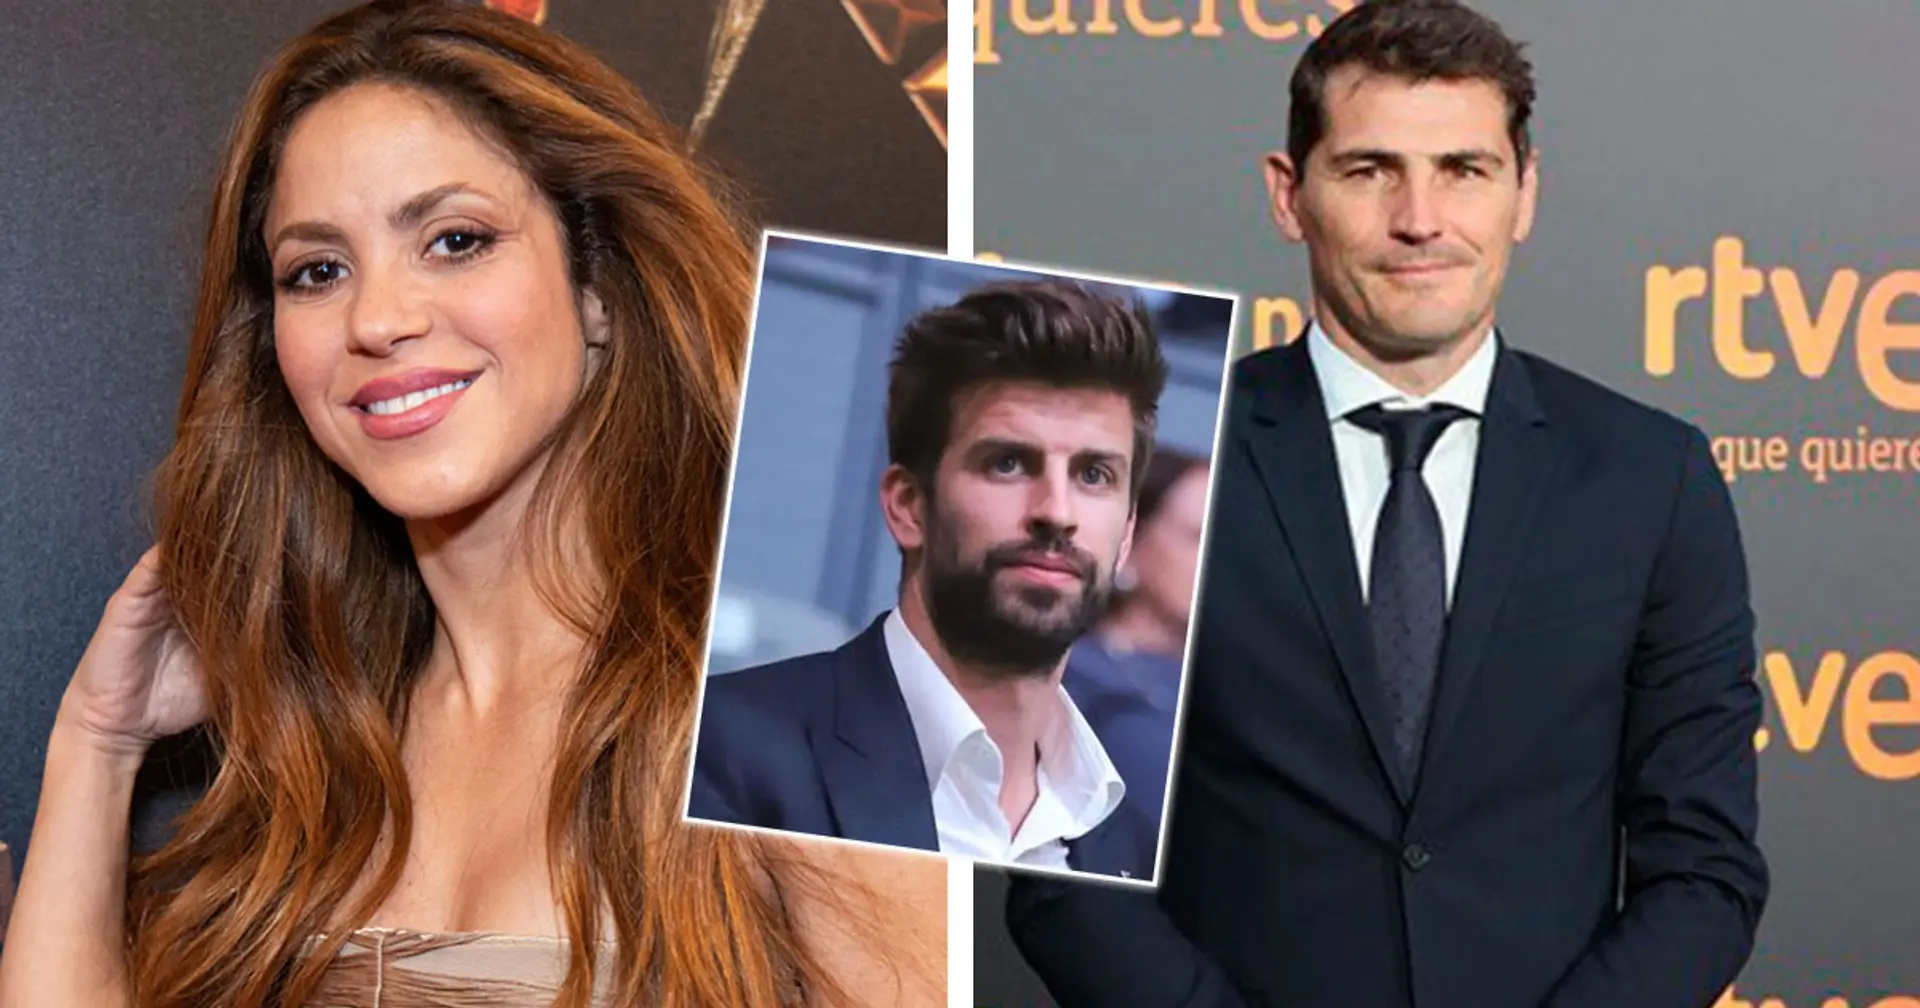 Iker Casillas contraint de démentir les rumeurs selon lesquelles il sort avec l'ex-partenaire de Piqué, Shakira